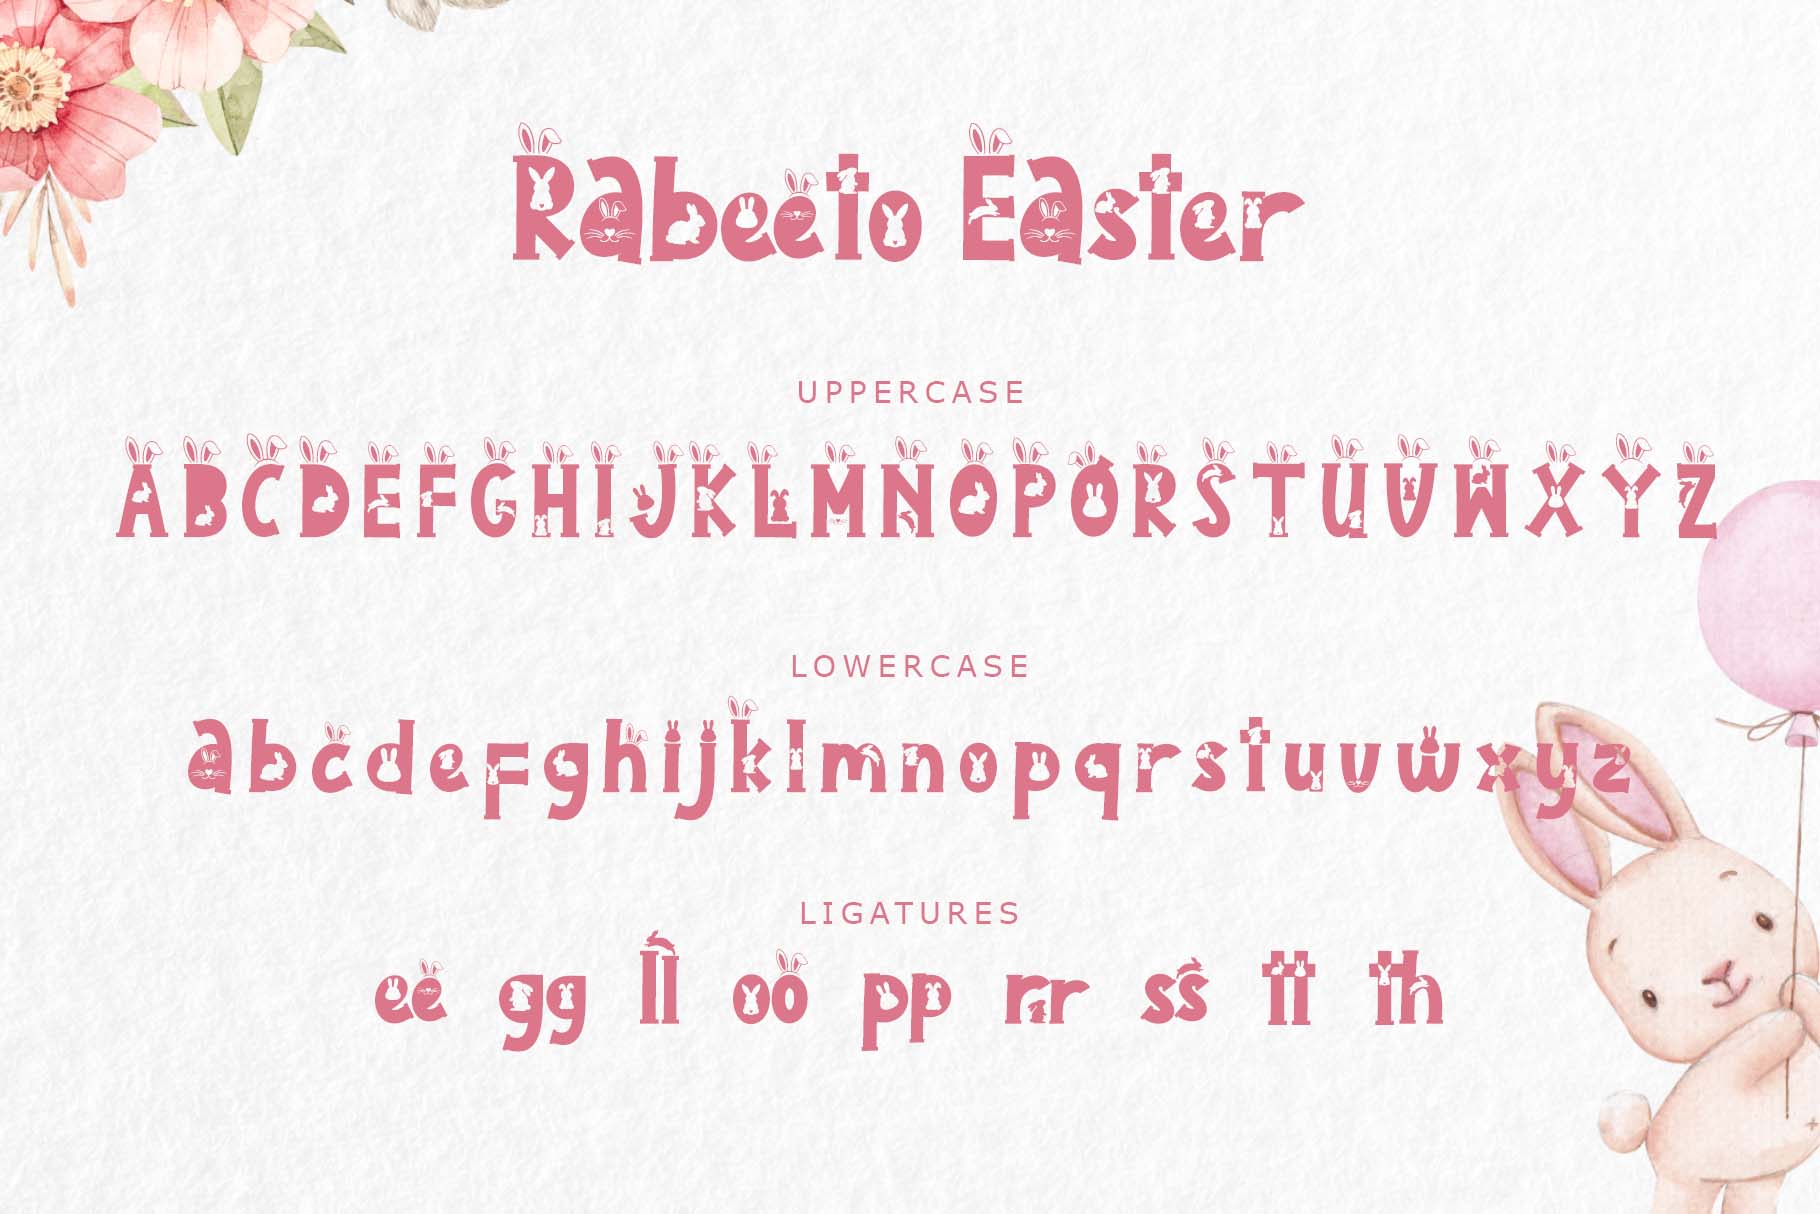 Rabeeto Easter